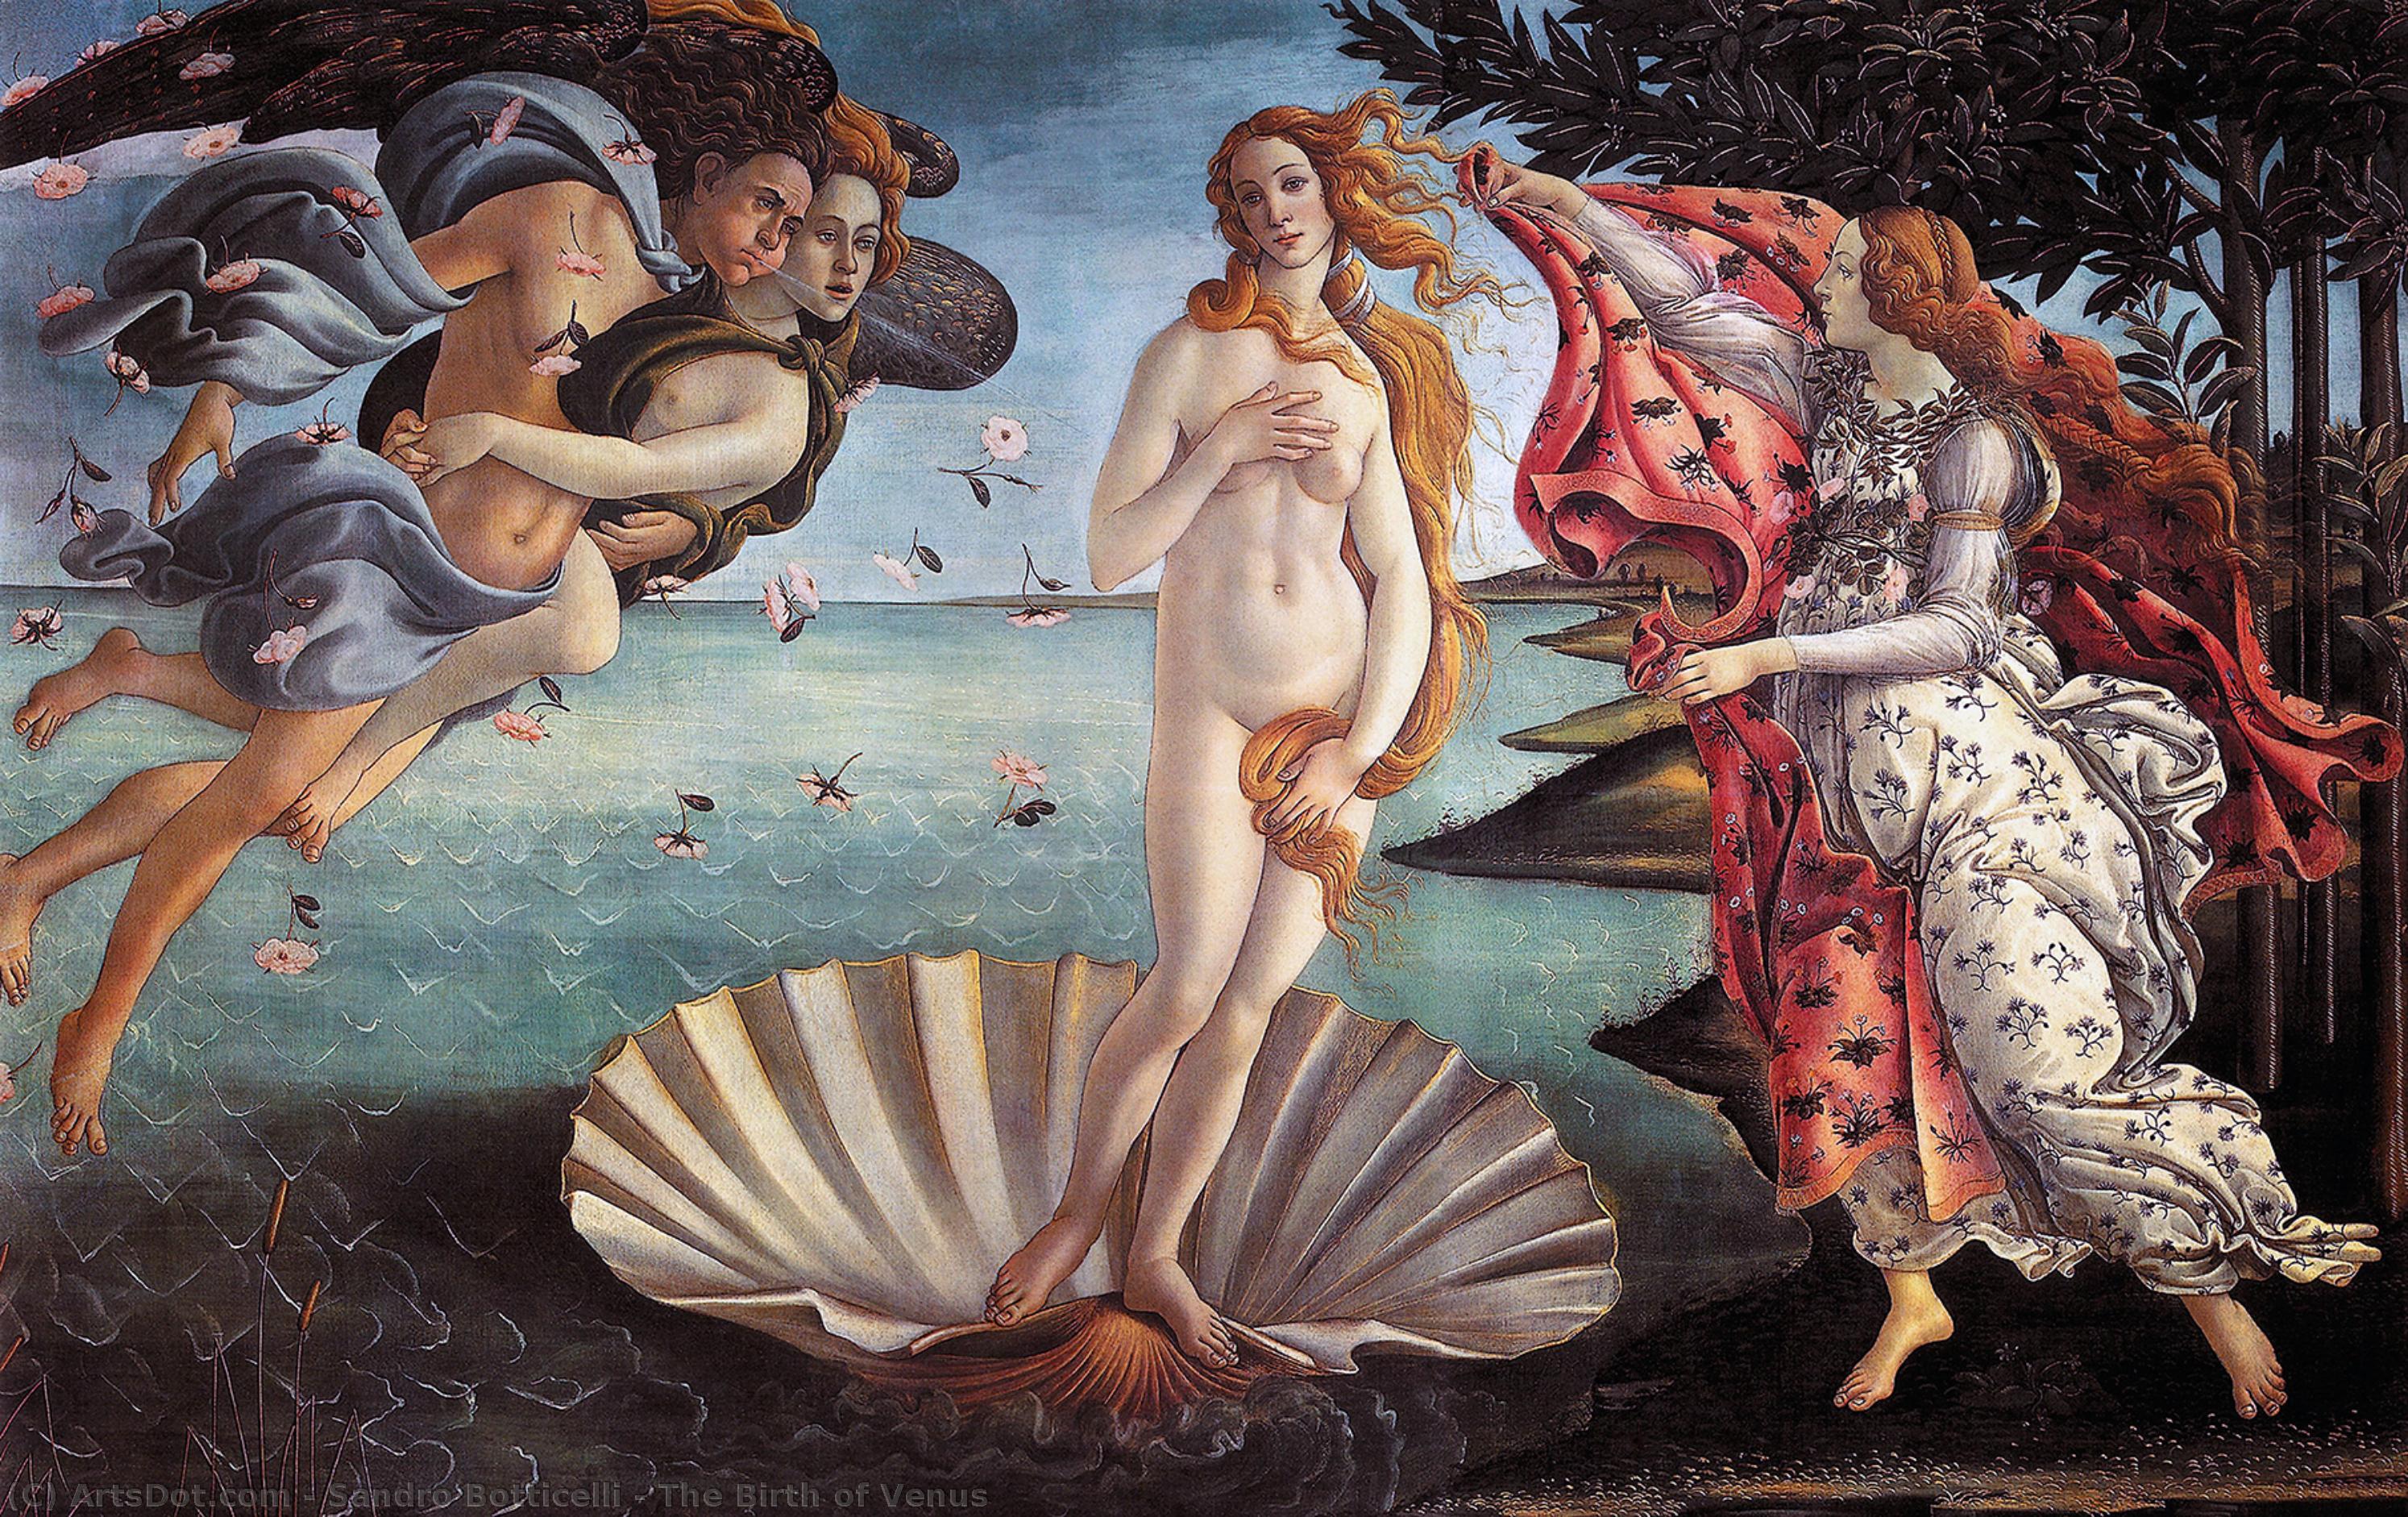 The Birth of Venus - một trong những bức tranh nổi tiếng nhất của Sandro Botticelli. Bức tranh tuyệt đẹp này miêu tả nàng Venus tinh khôi đang xuống từ trời để đến trên đại dương. Hãy xem và cảm nhận tình yêu và sự bất diệt của vẻ đẹp.